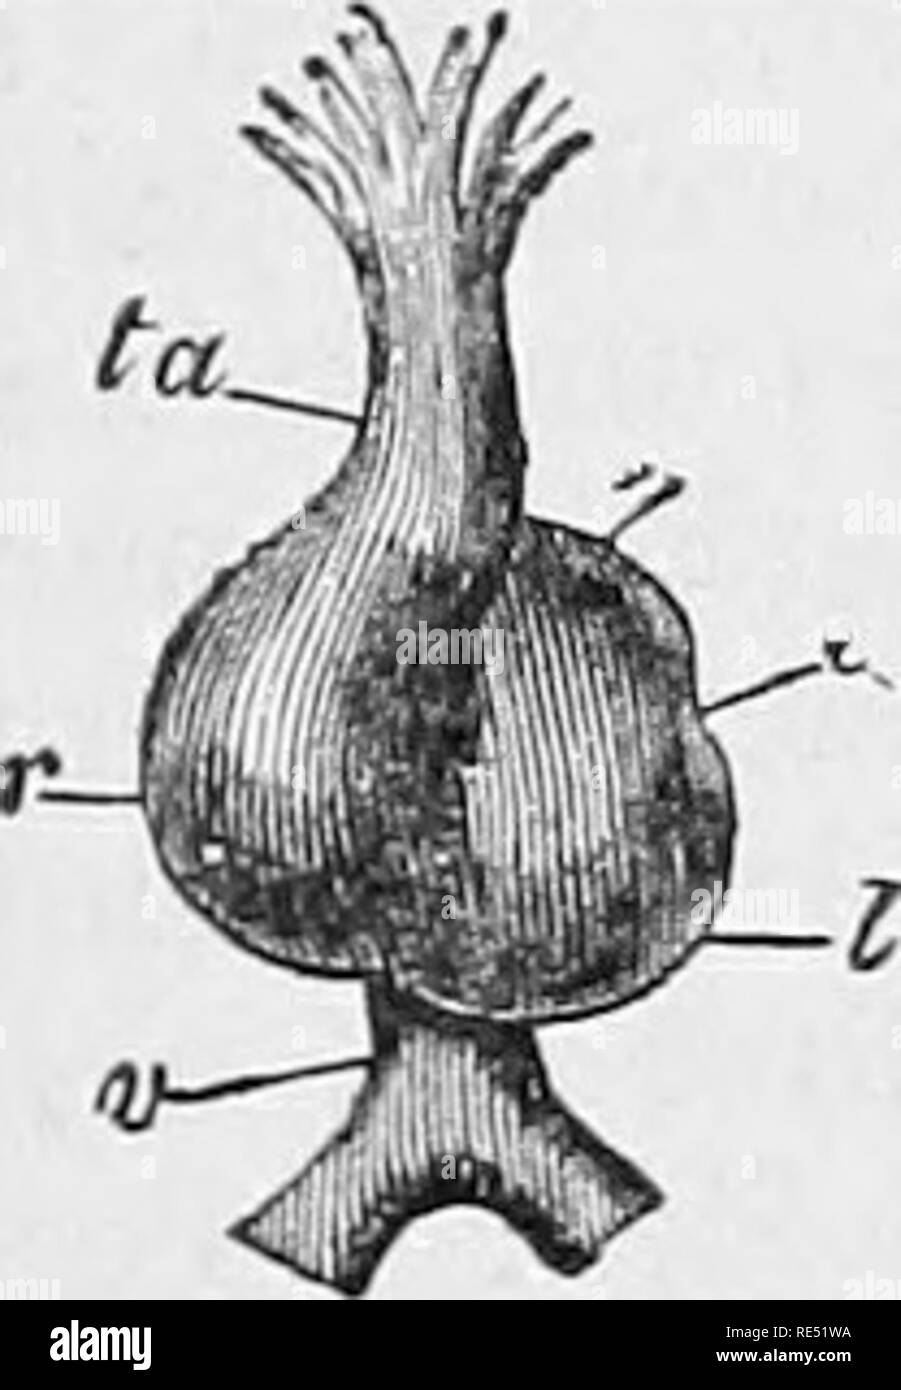 . La anatomia comparata degli animali domestici. Anatomia Veterinaria. Il FCETUS. Prom 915 la sua parte anteriore molla due rami, le arcate aortica {arcus aortce), che sono rivolte verso la testa dell' embrione, e sono successivamente in- rispecchia verso il basso e all'indietro. Essi si uniscono a costituire la singola aorta, il quale a sua volta si divide in due tronchi, arterie vertehralis o j)rimitive aortm. Queste navi passare lungo la superficie inferiore dell'embrione, paralleli tra loro e fornire durante il loro corso di quattro o cinque divisioni, la omphalo-mesenterici di arterie che ramif Foto Stock